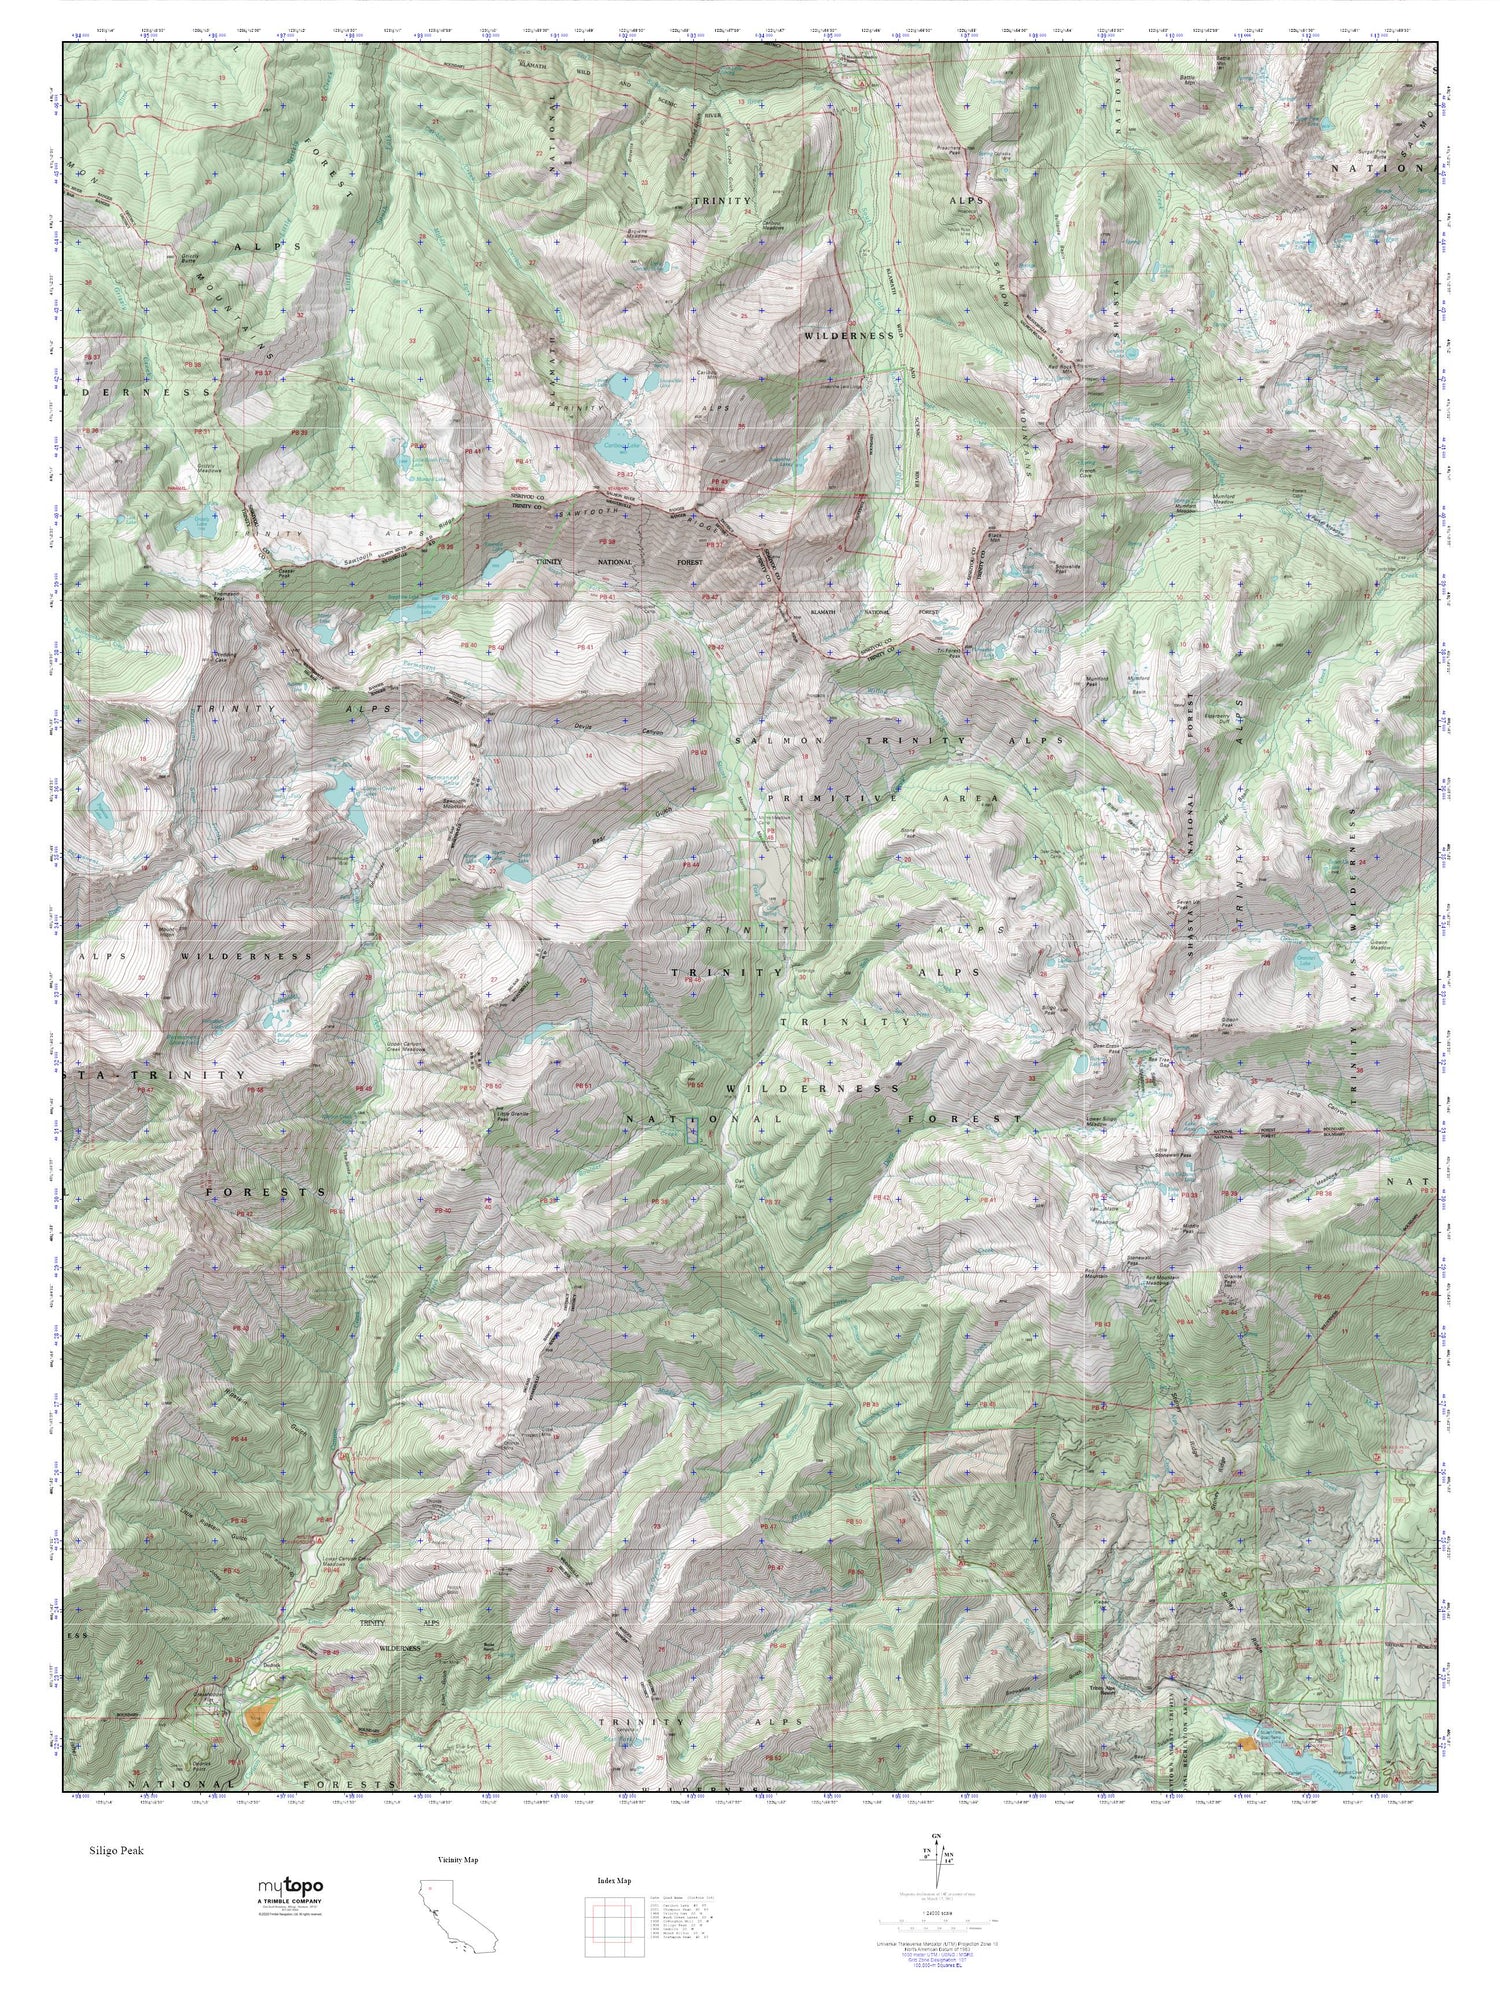 Trinity Alps MyTopo Explorer Series Map Image